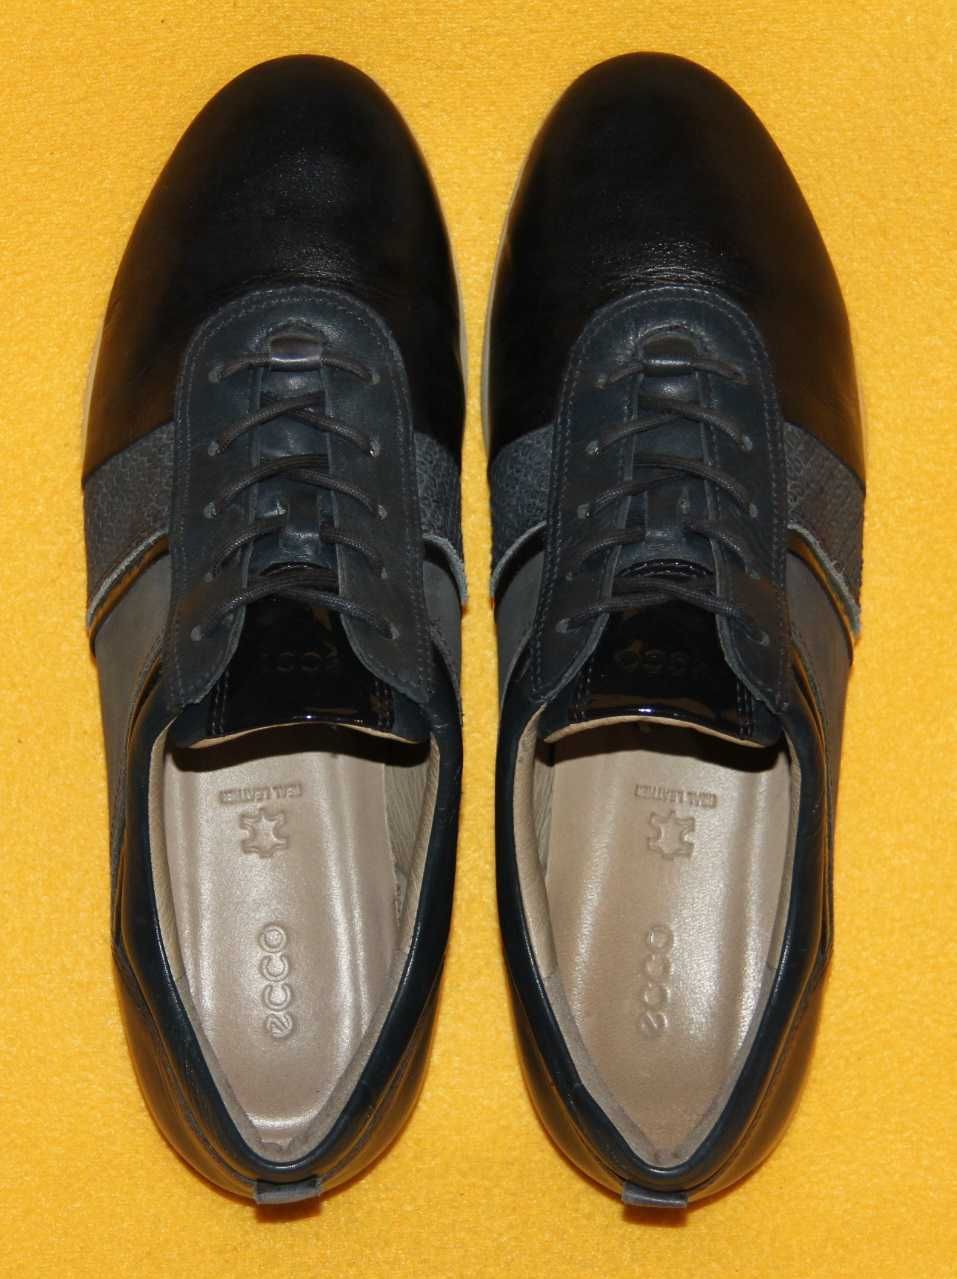 Кроссовки, туфли, мокасины ECCO р.37-38 стелька 24 см